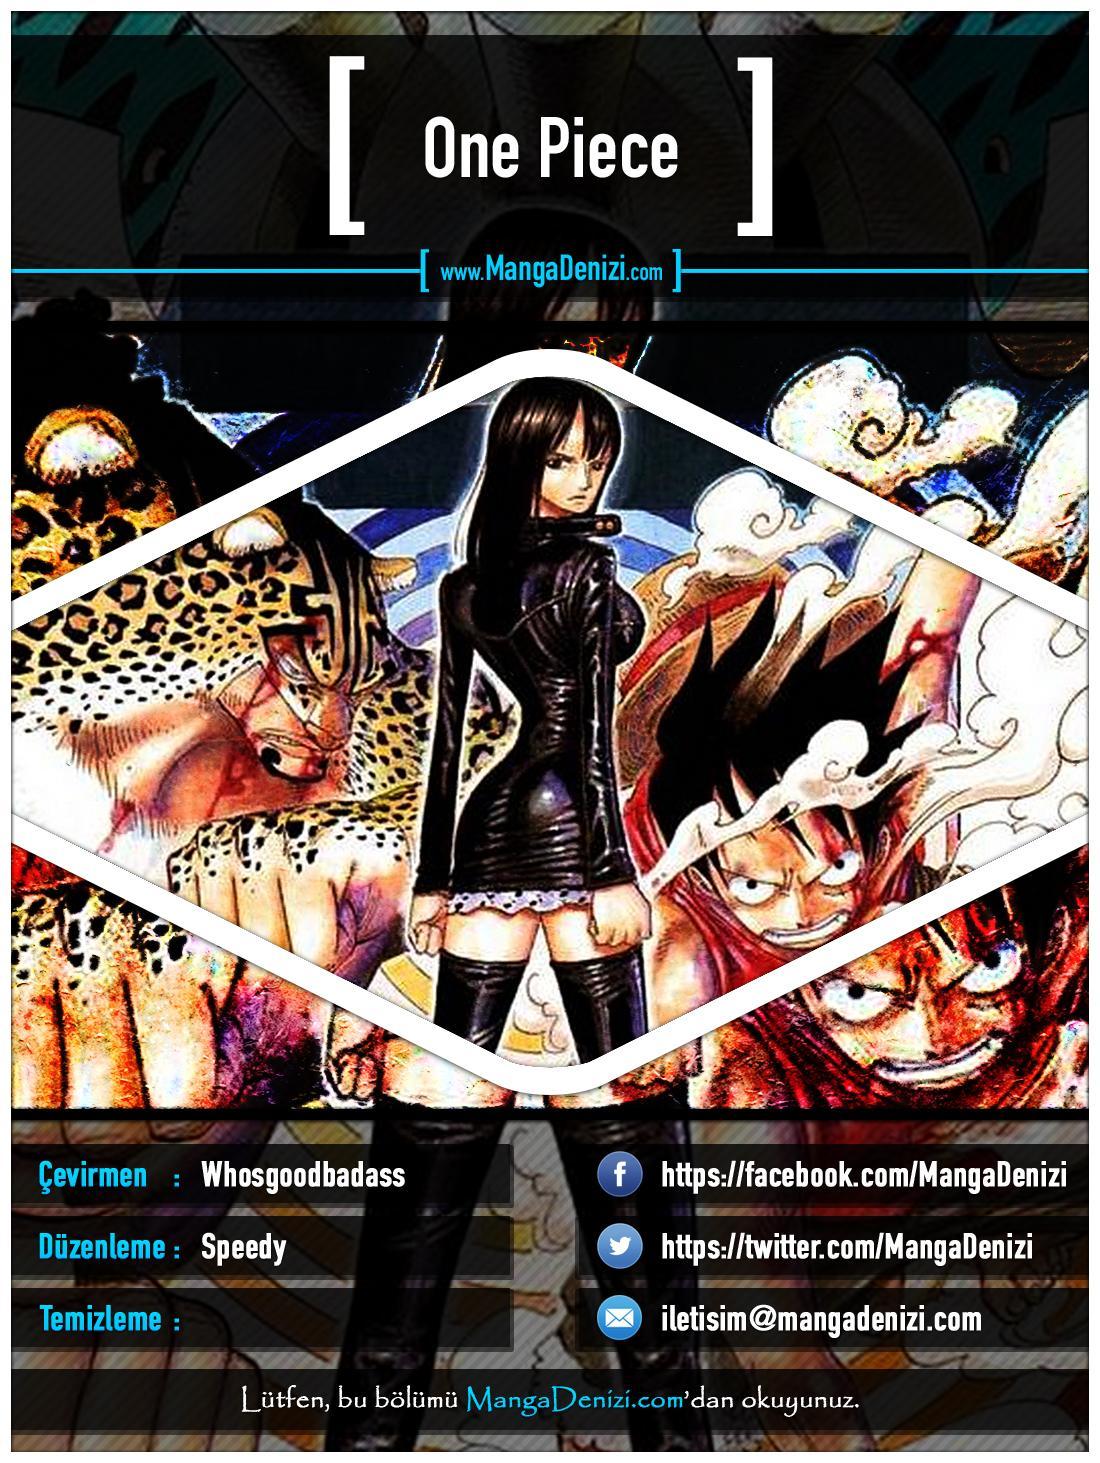 One Piece [Renkli] mangasının 0351 bölümünün 1. sayfasını okuyorsunuz.